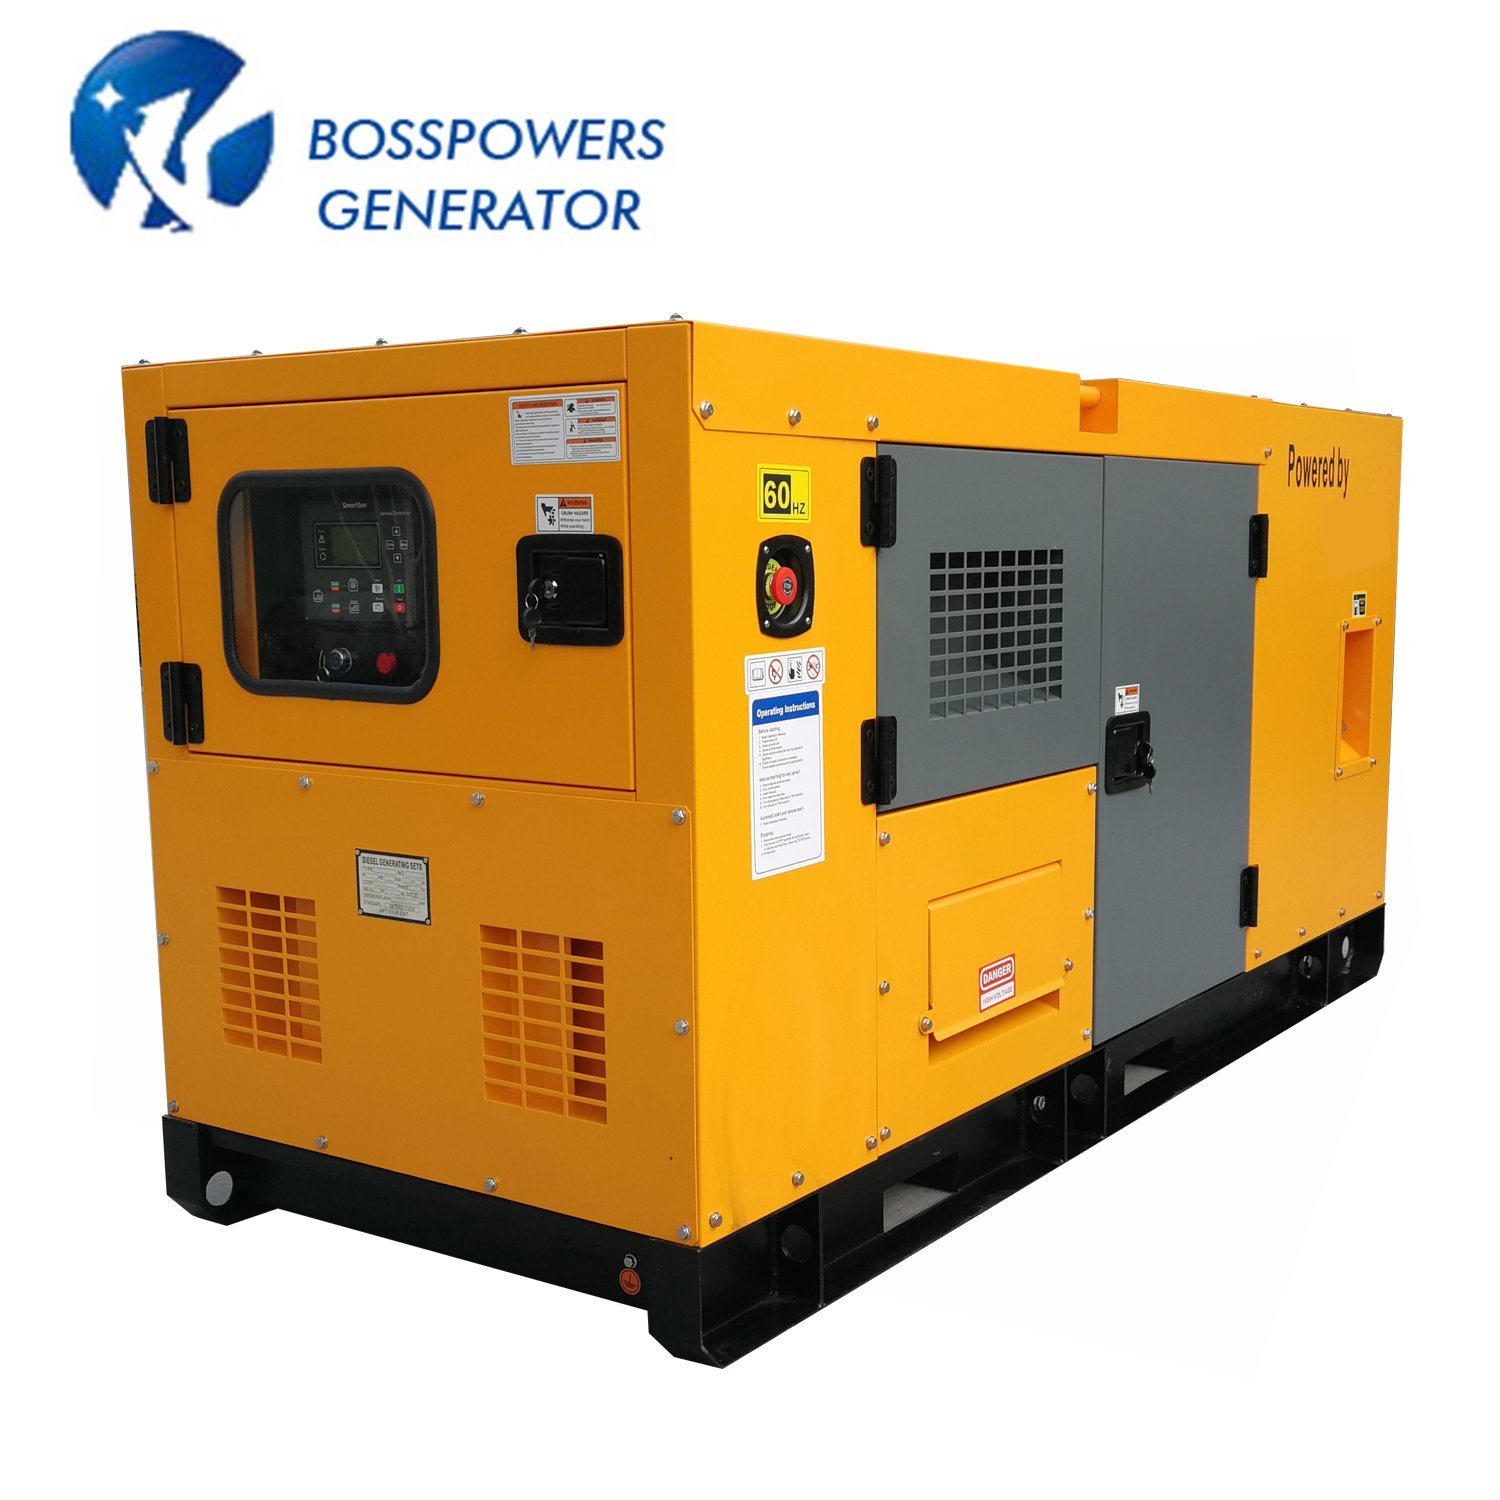 Wholesale Yangdong Engine Diesel Generating 40kVA 50kVA Power Industrial Diesel Generator Monitor with Remote Start